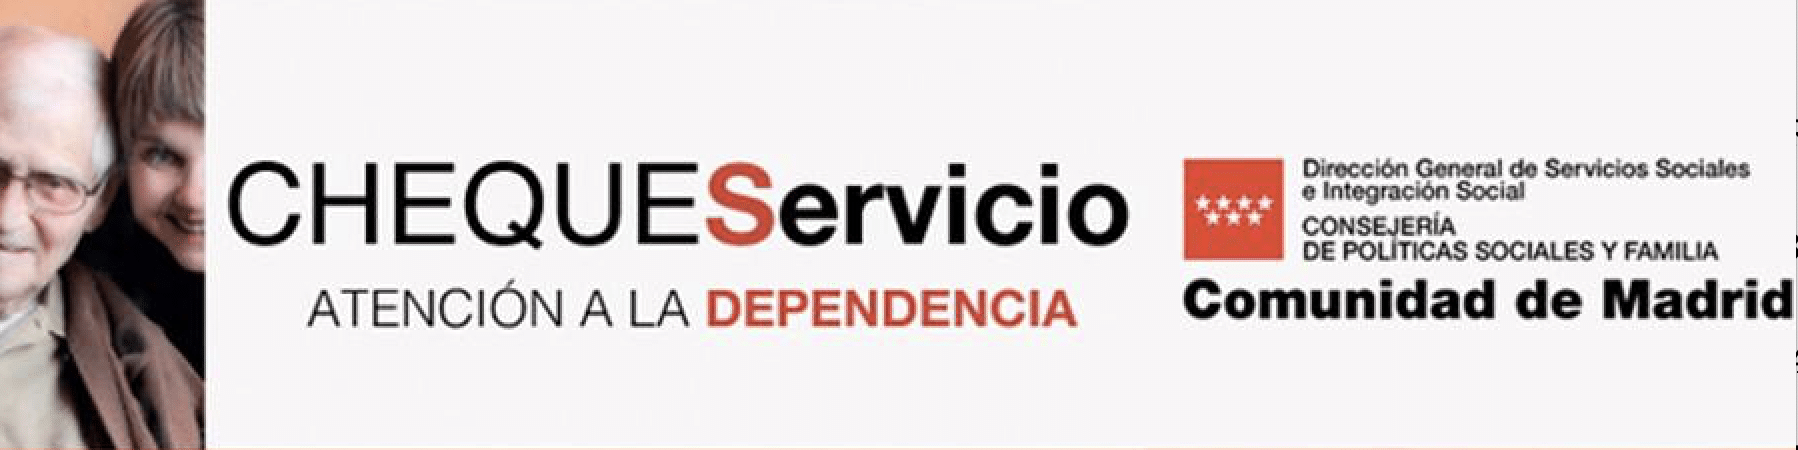 Cheque Servicio Comunidad de Madrid